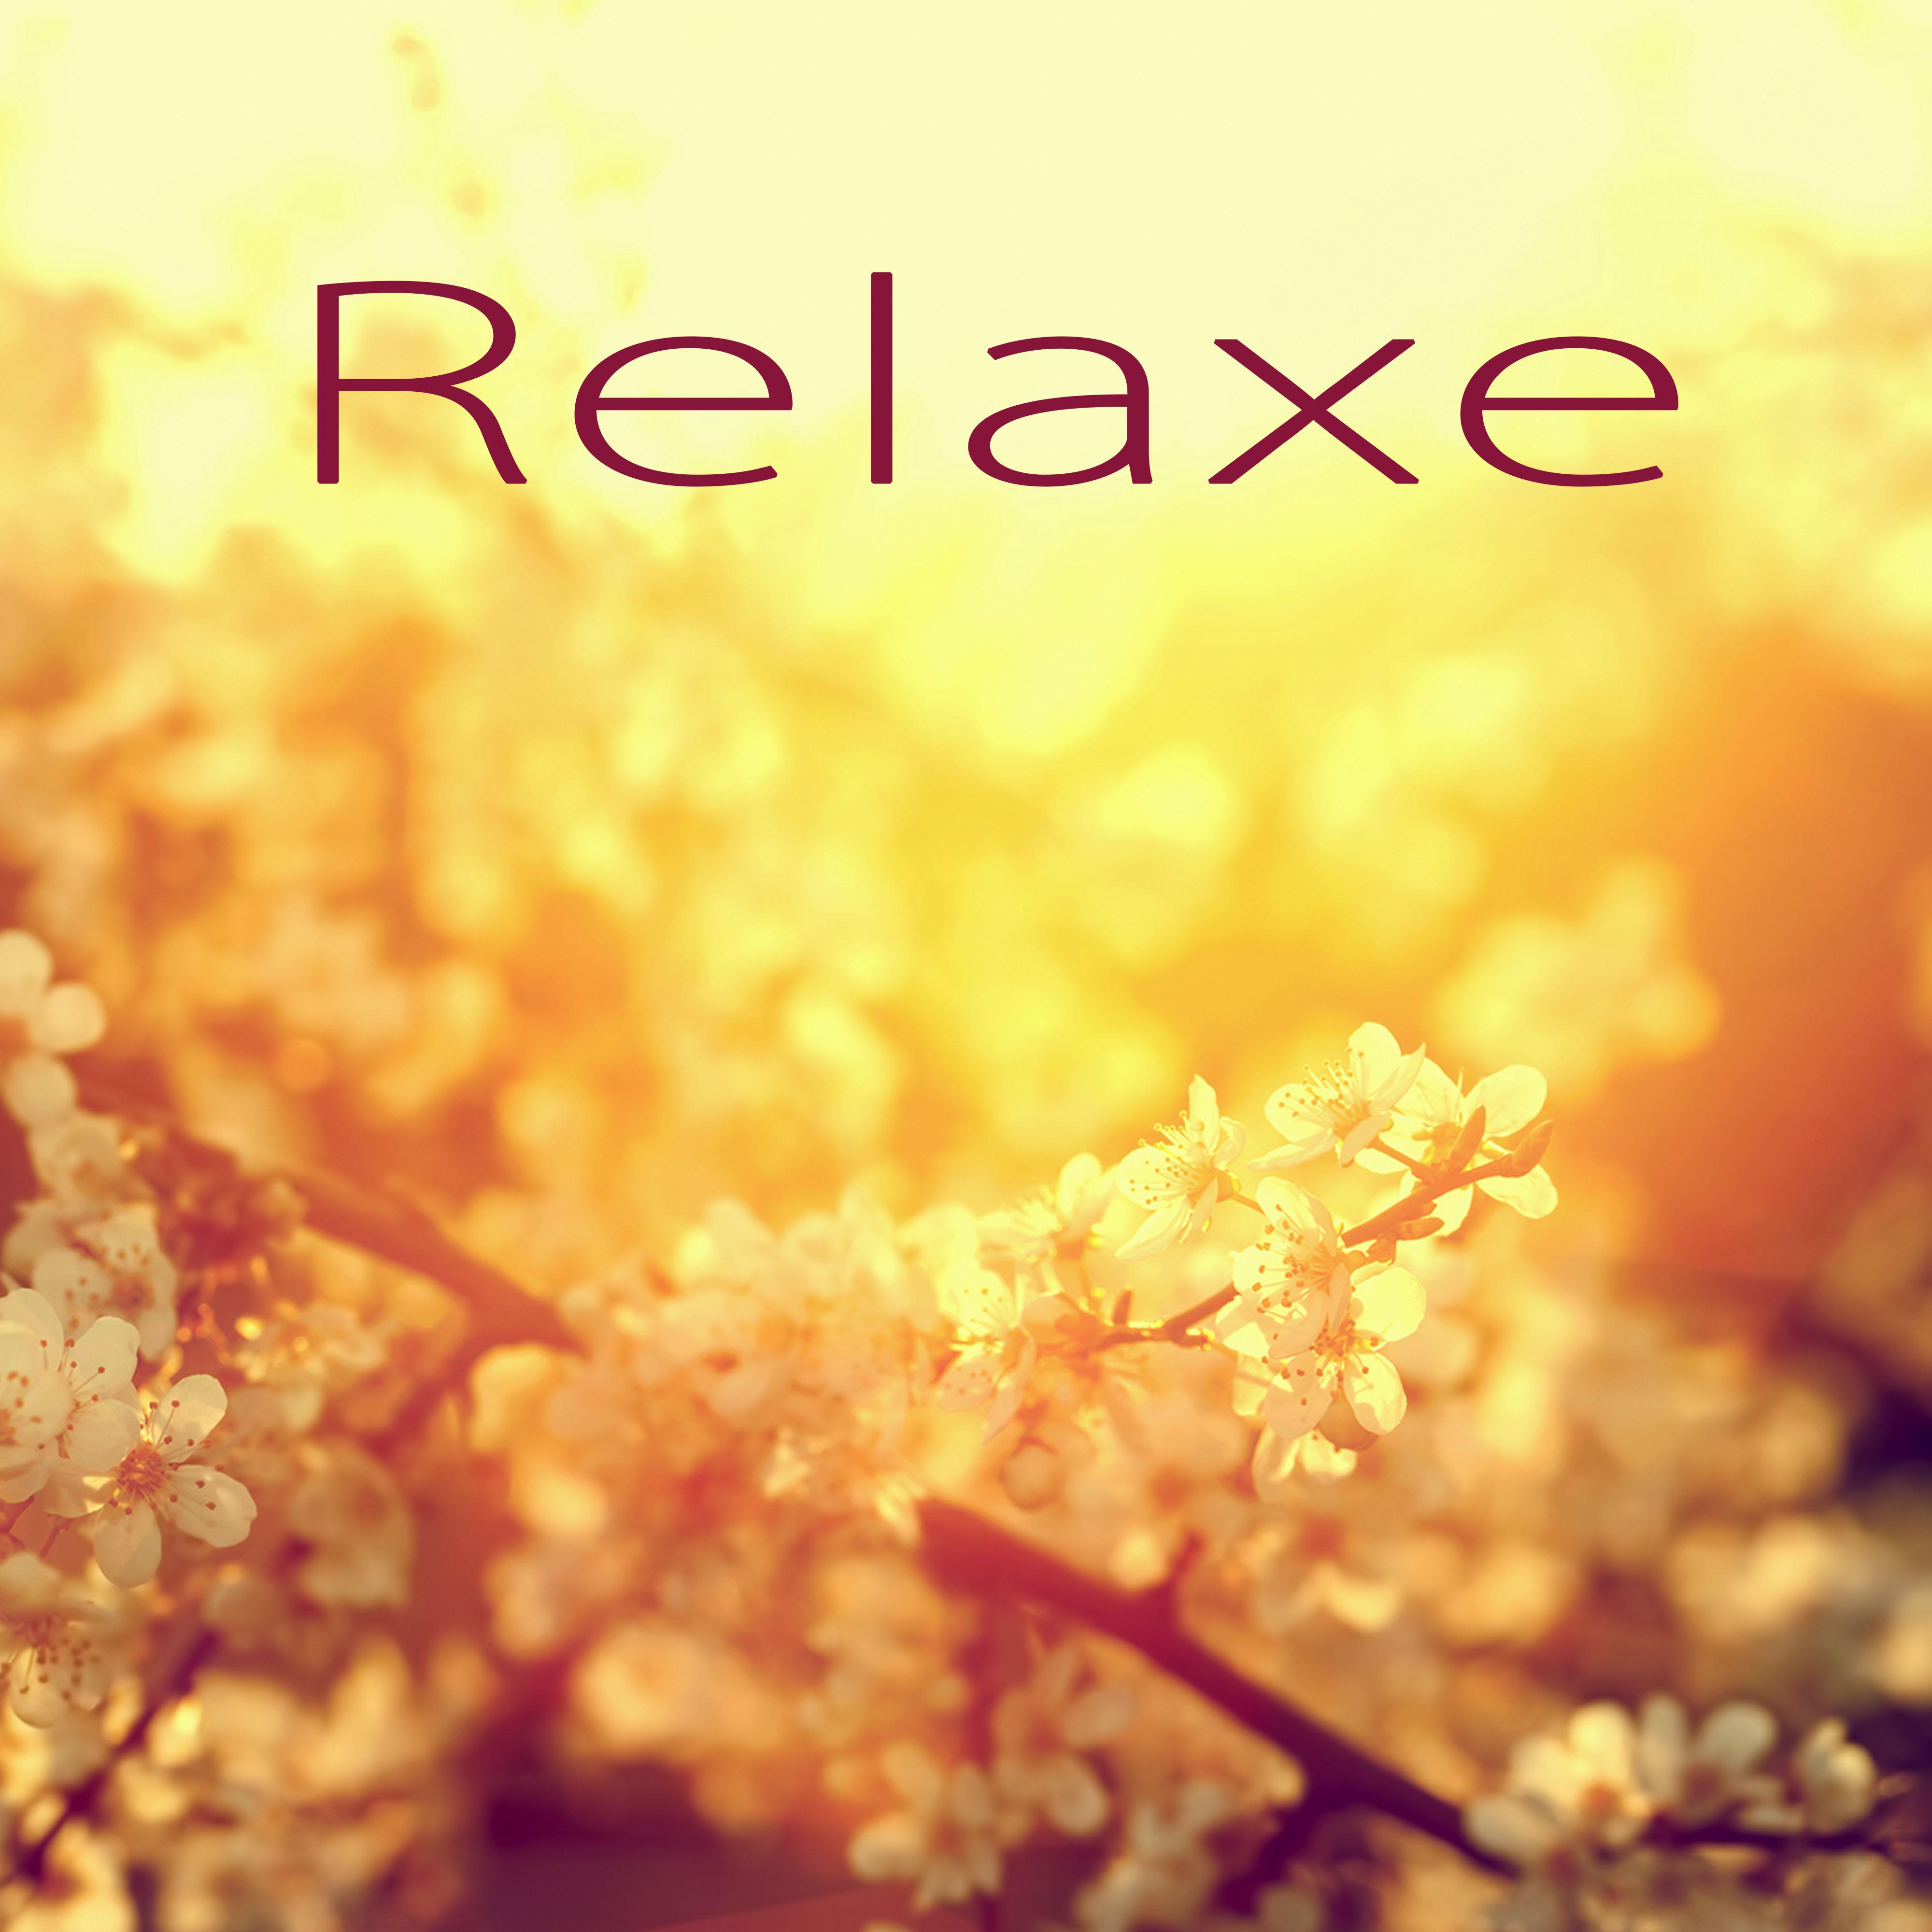 Relaxe  Relaxar a Mente con Musica New Age, Mu sicas Instrumentais para Medita o, Pensamento Positivo, Bem Estar e Serenidade